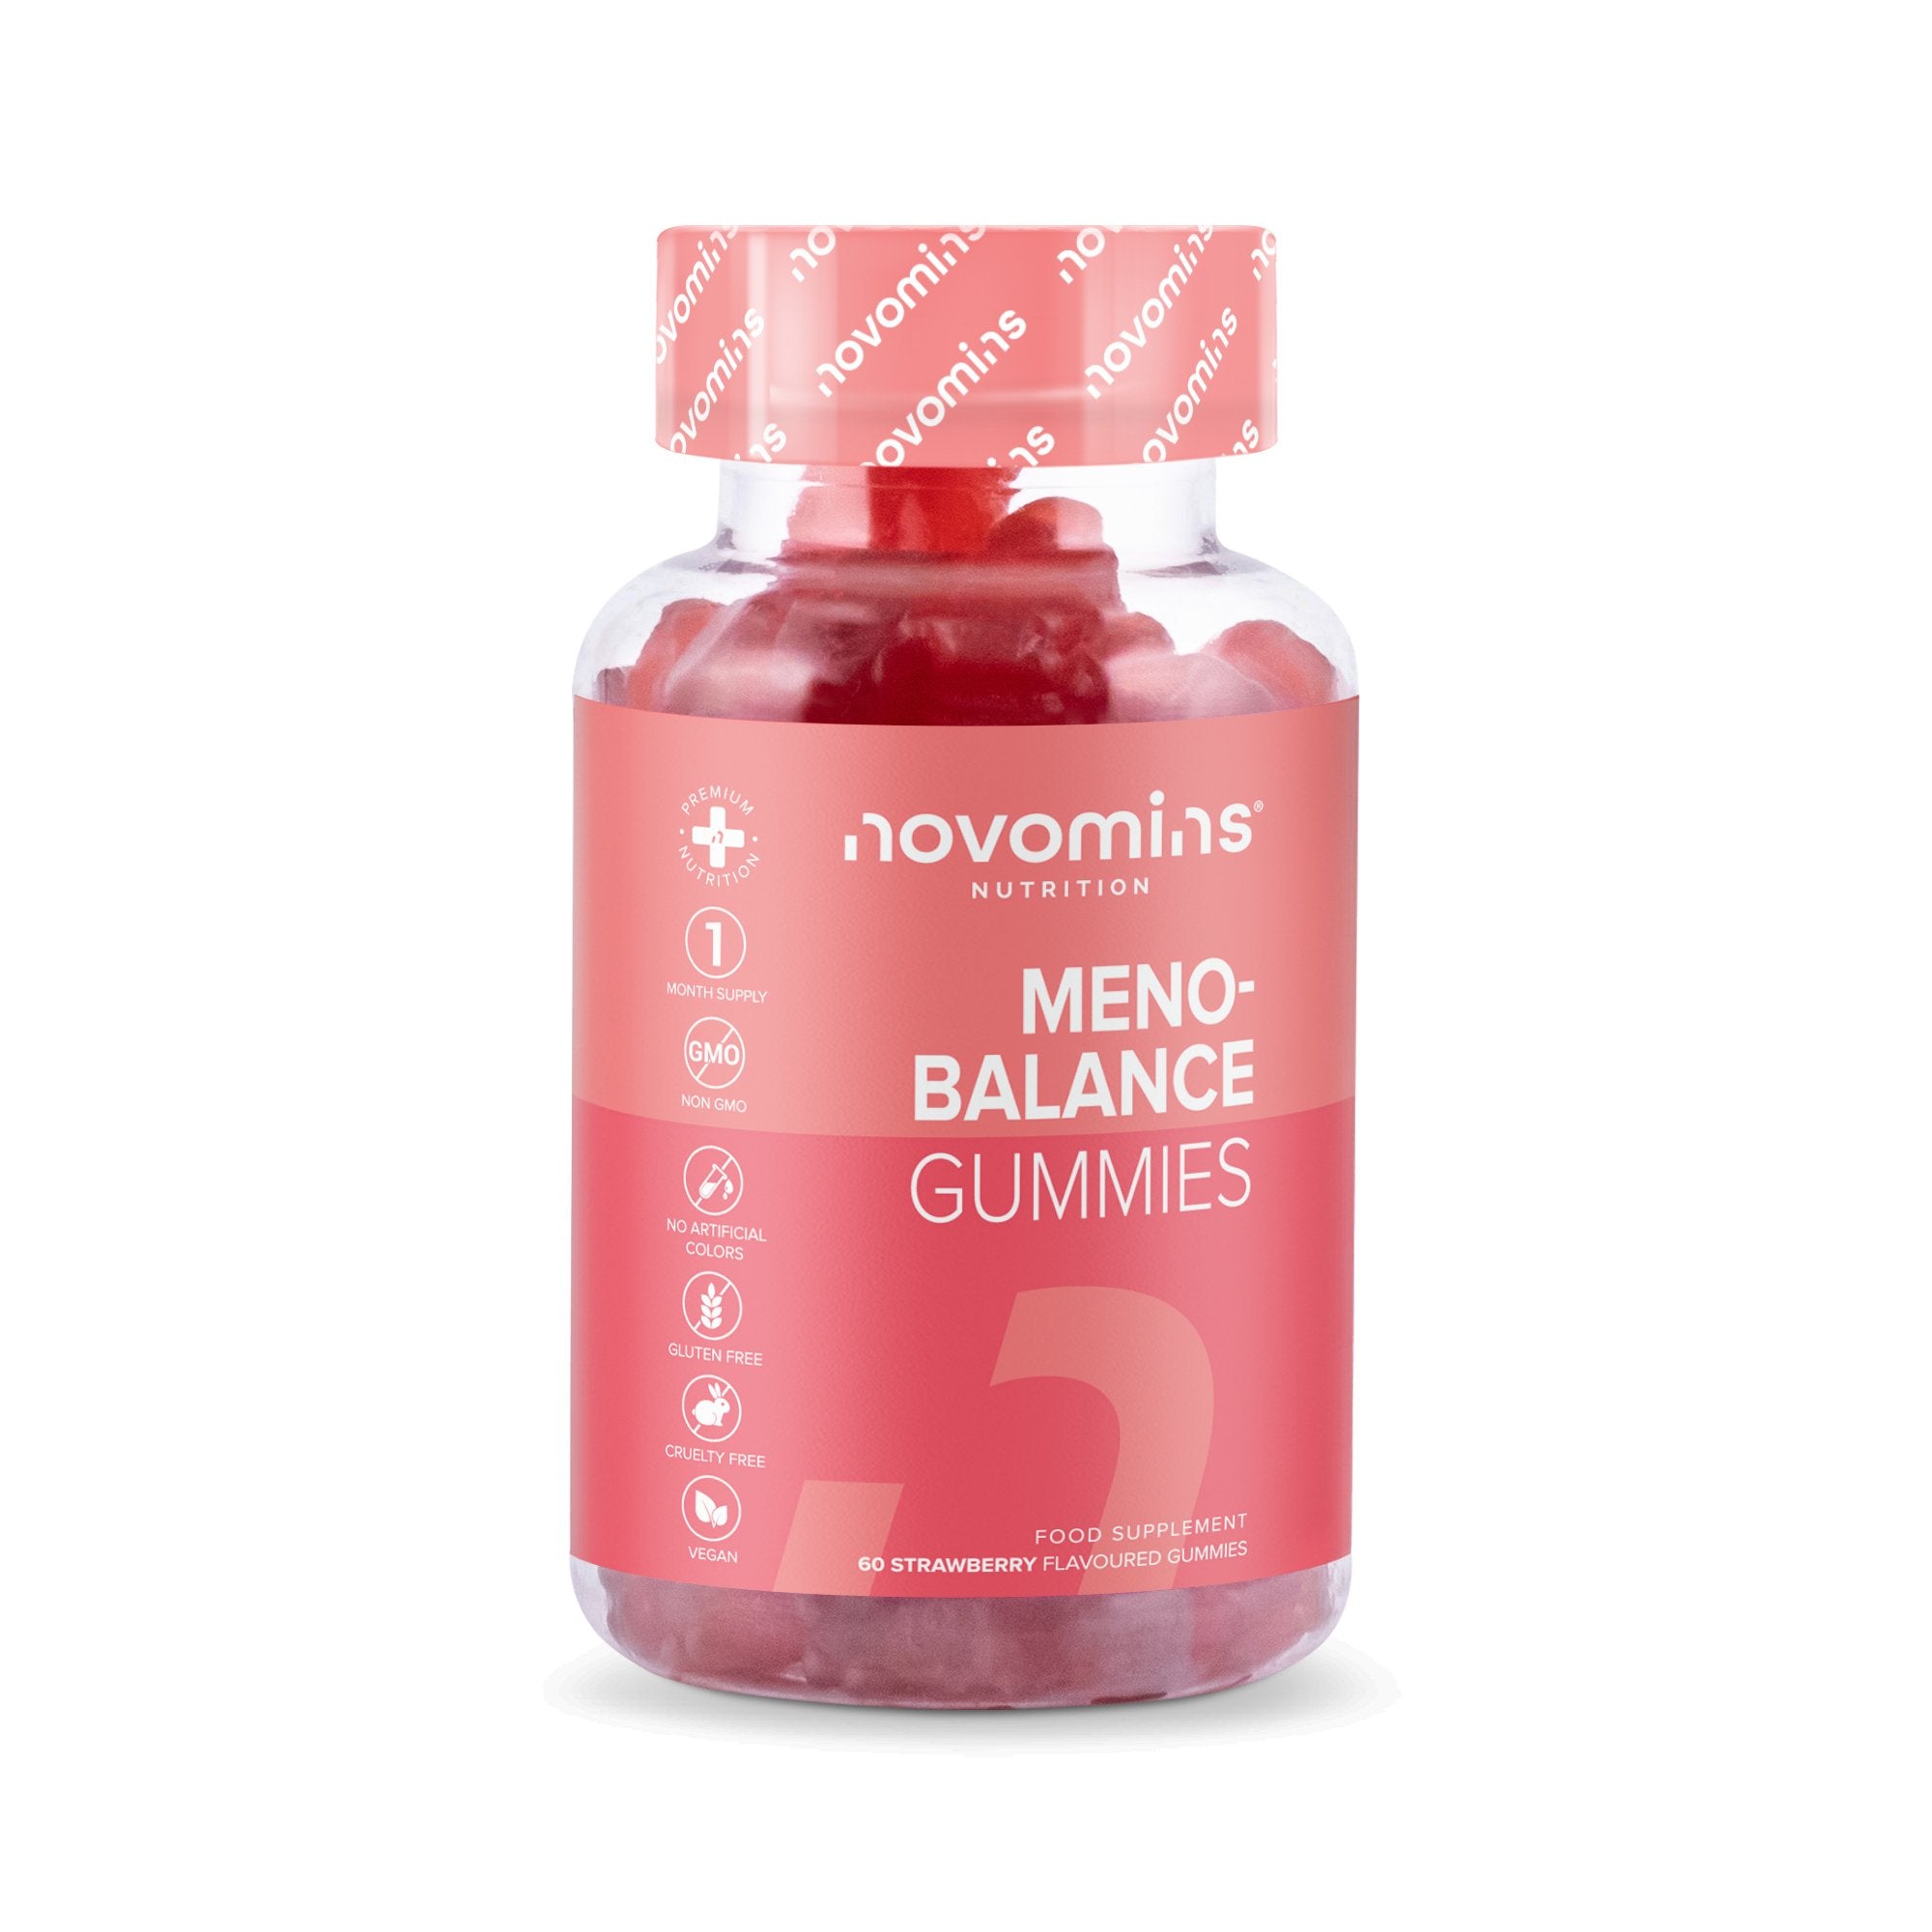 Novomins Meno-Balance Gummies